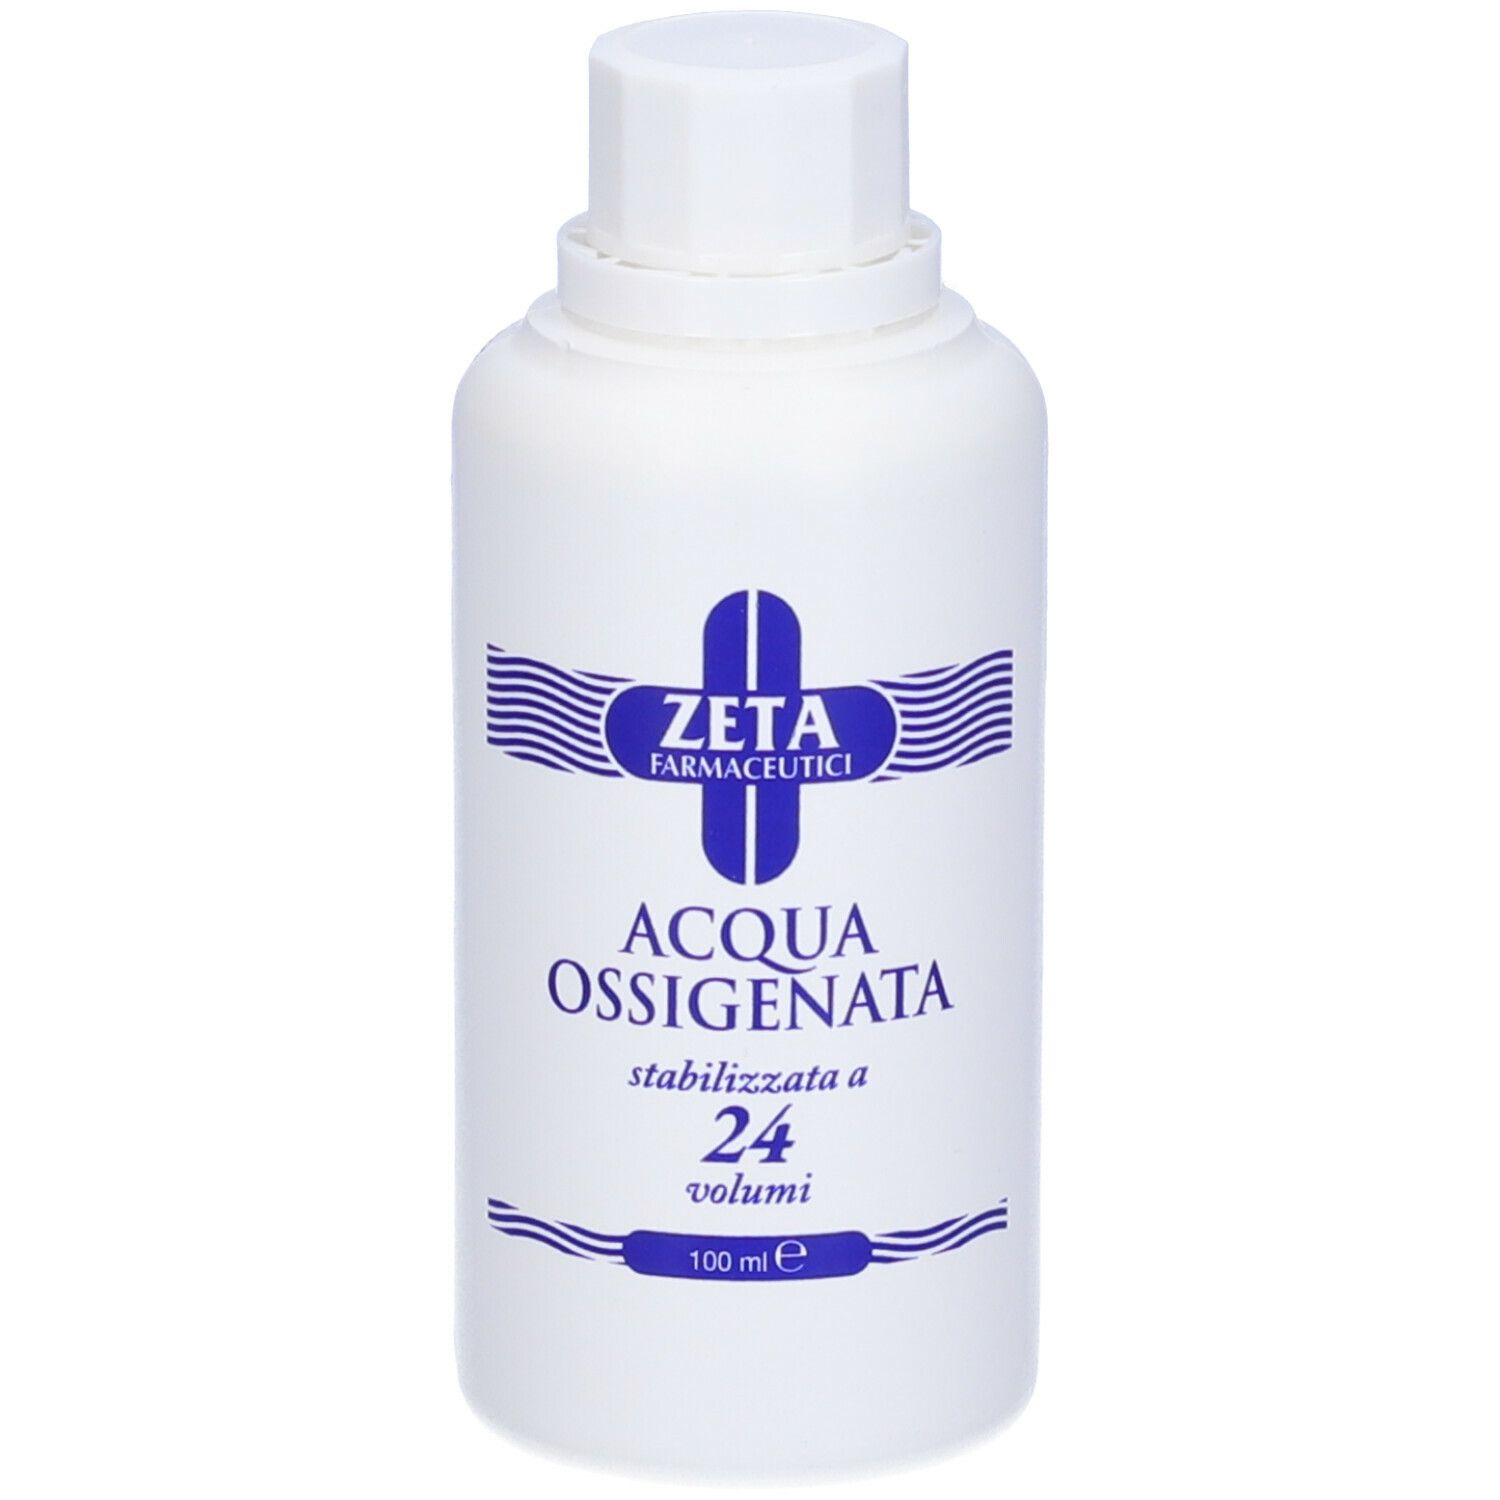 Zeta Farmaceutici Acqua ossigenata 24 Vol